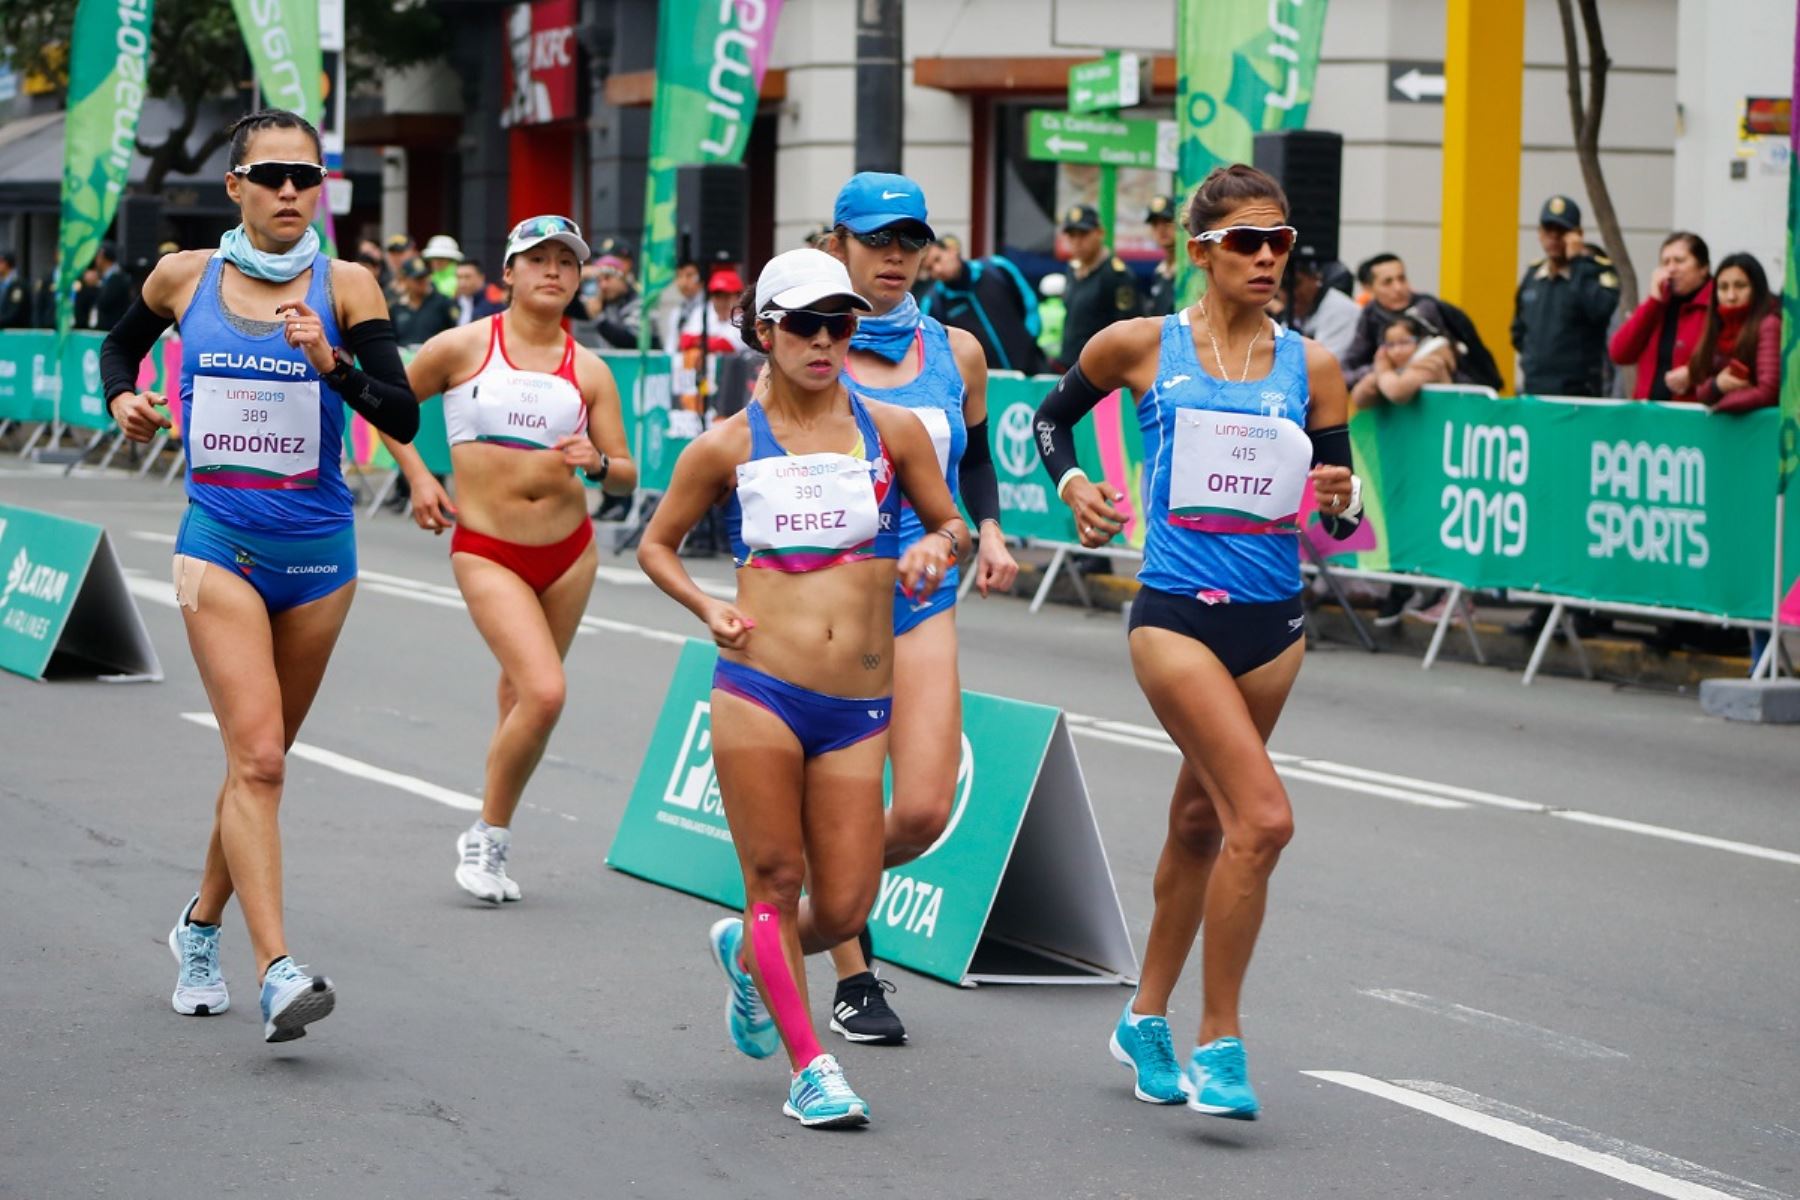 Marcha atlética se desarrolló en Miraflores